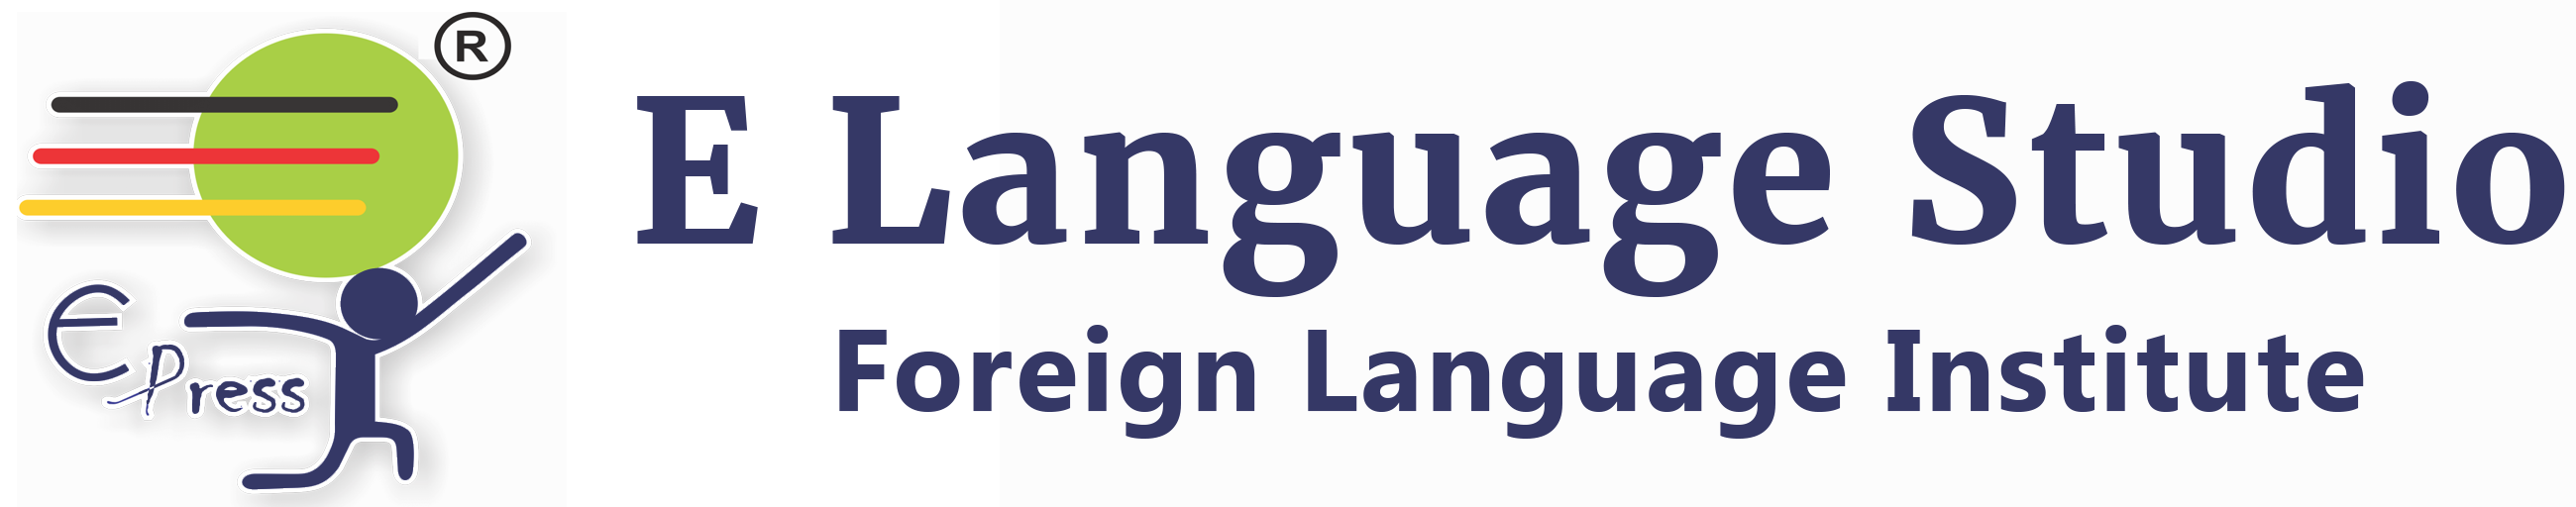 E Language Studio (Foreign Language Institute) Logo